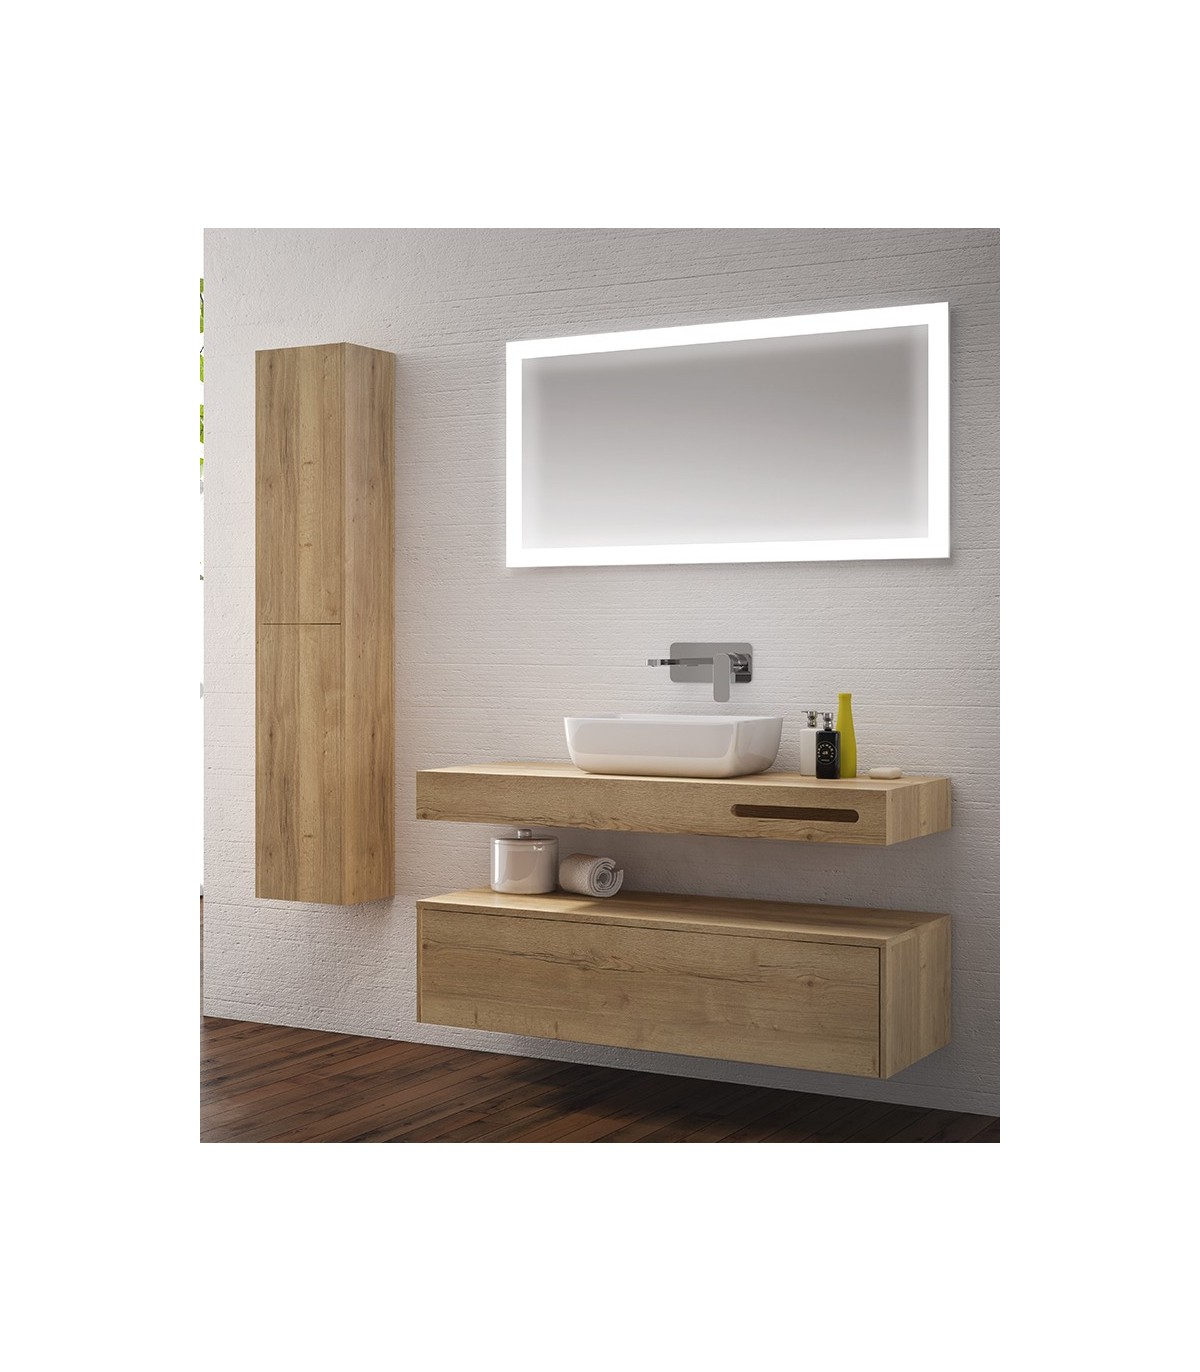 Mueble de baño con lavabo centrado 70 cm de ancho en color blanco